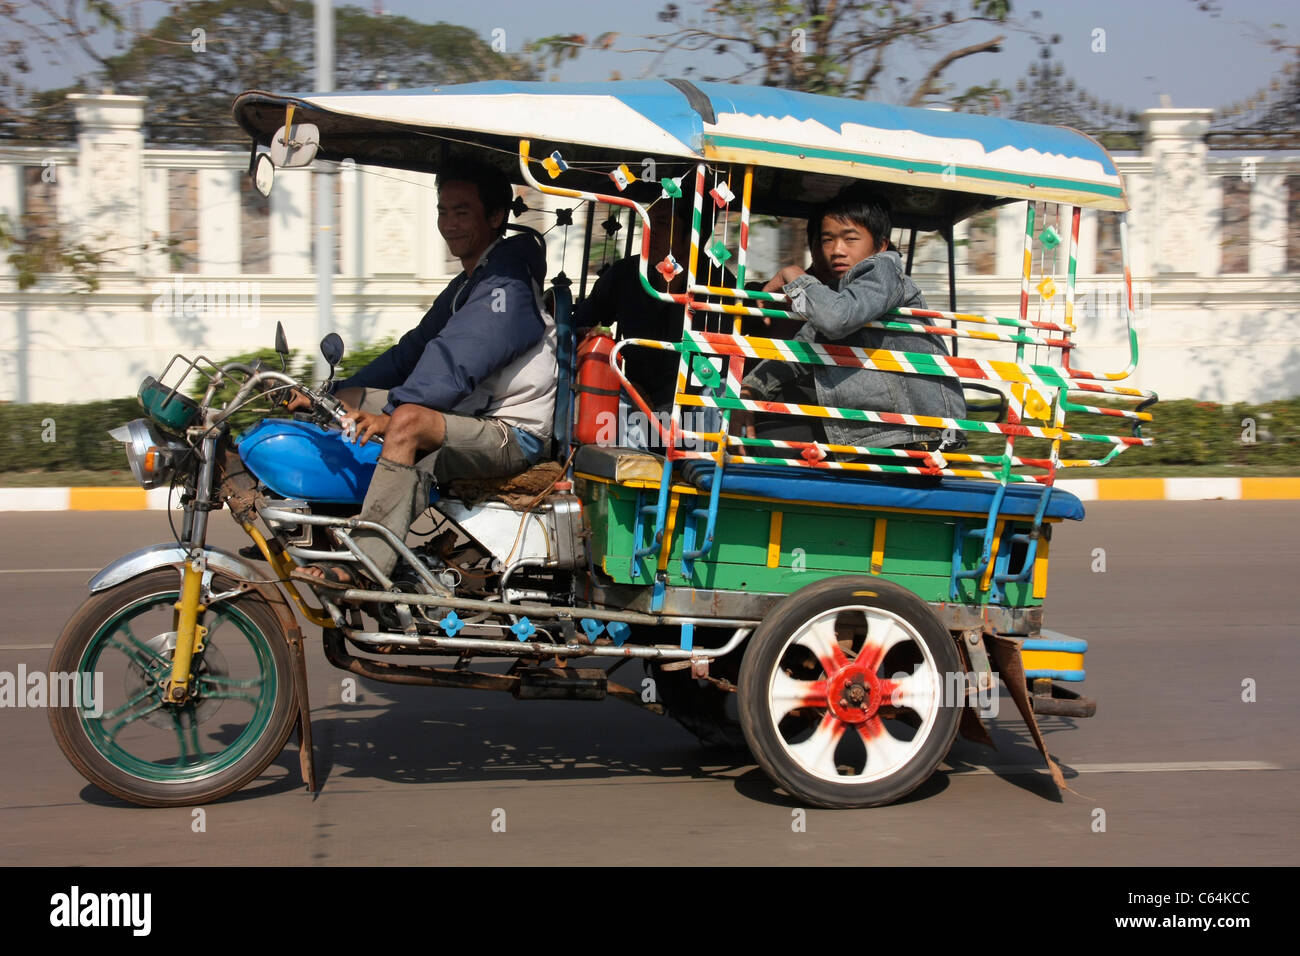 Jumbo laotien passager tricycle rickshaw sur Vientiane, Laos Banque D'Images